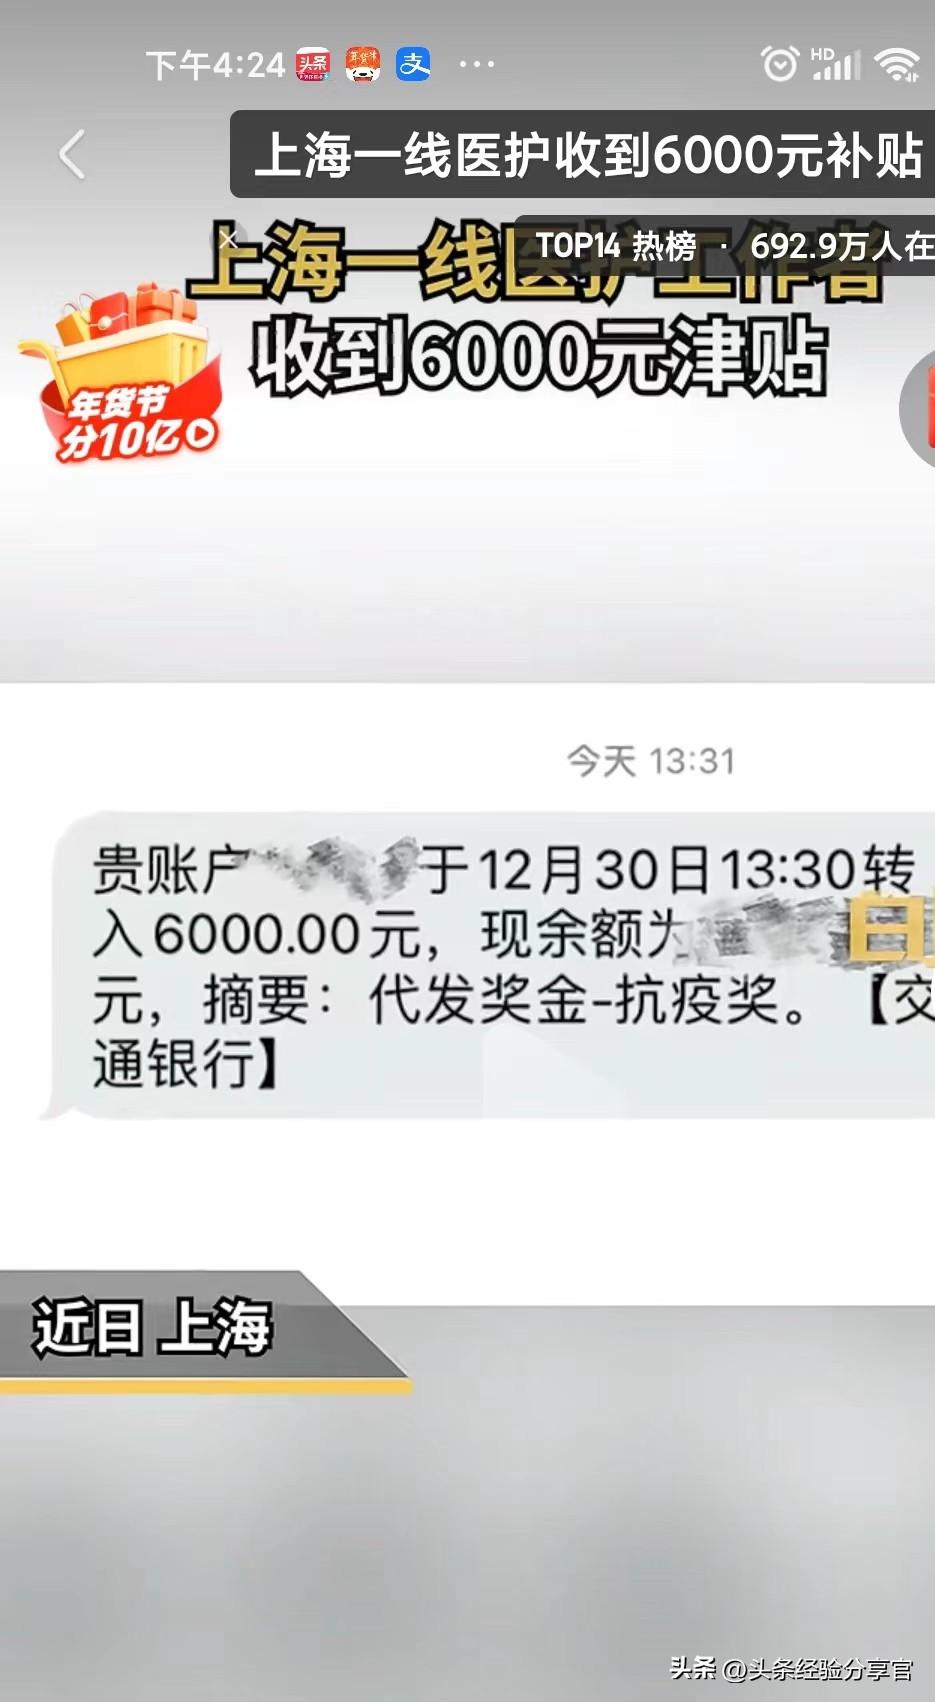 上海一线医护收到6000元津贴